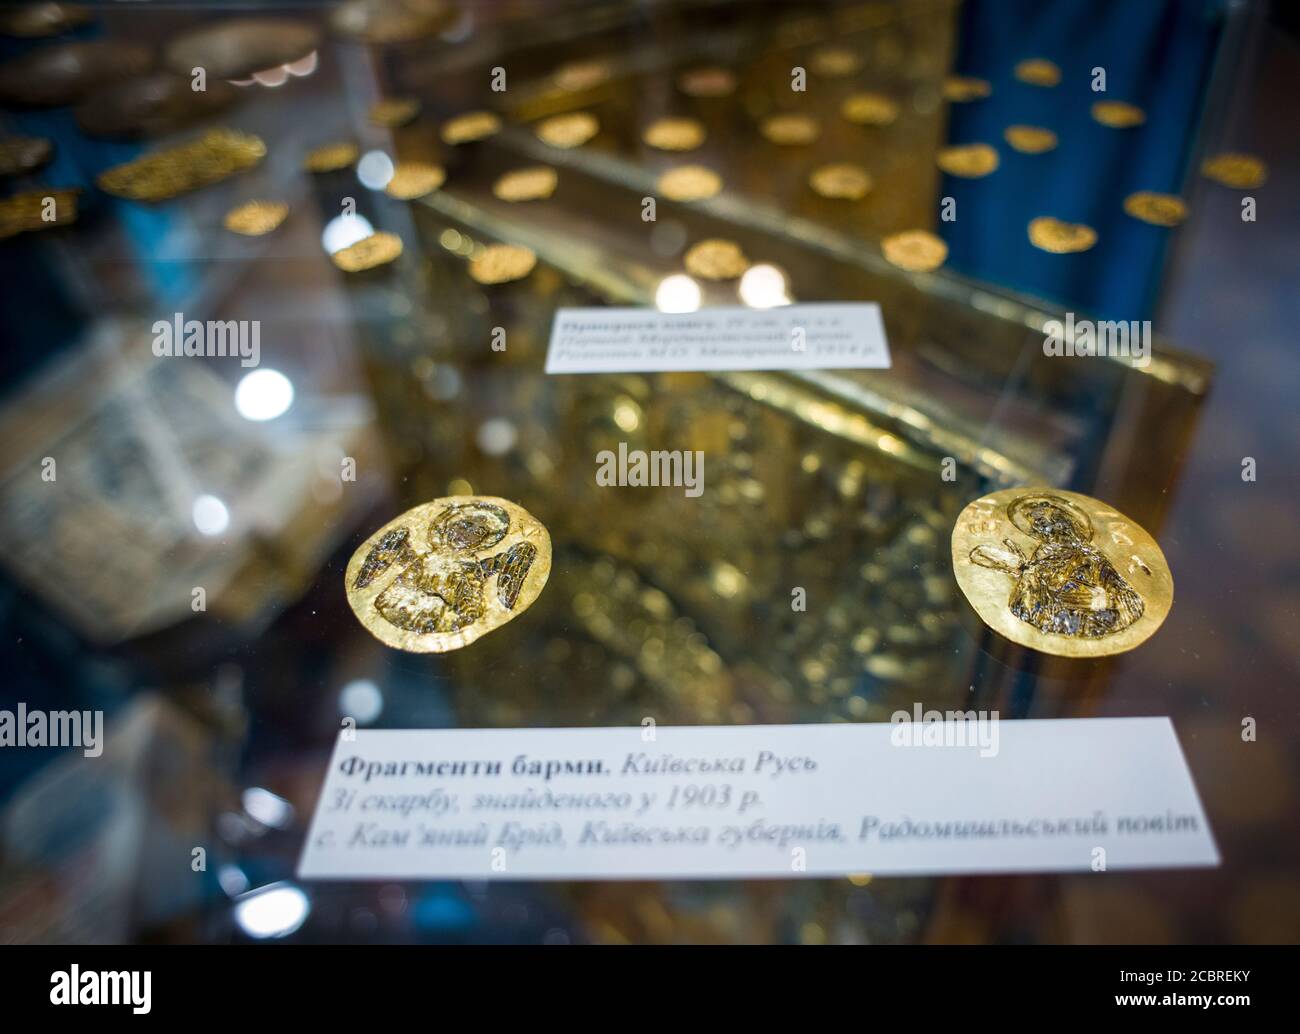 la barma dorata del periodo Rus' di Kiev, dalla collezione archeologica del Museo di storia di Charkiv Foto Stock